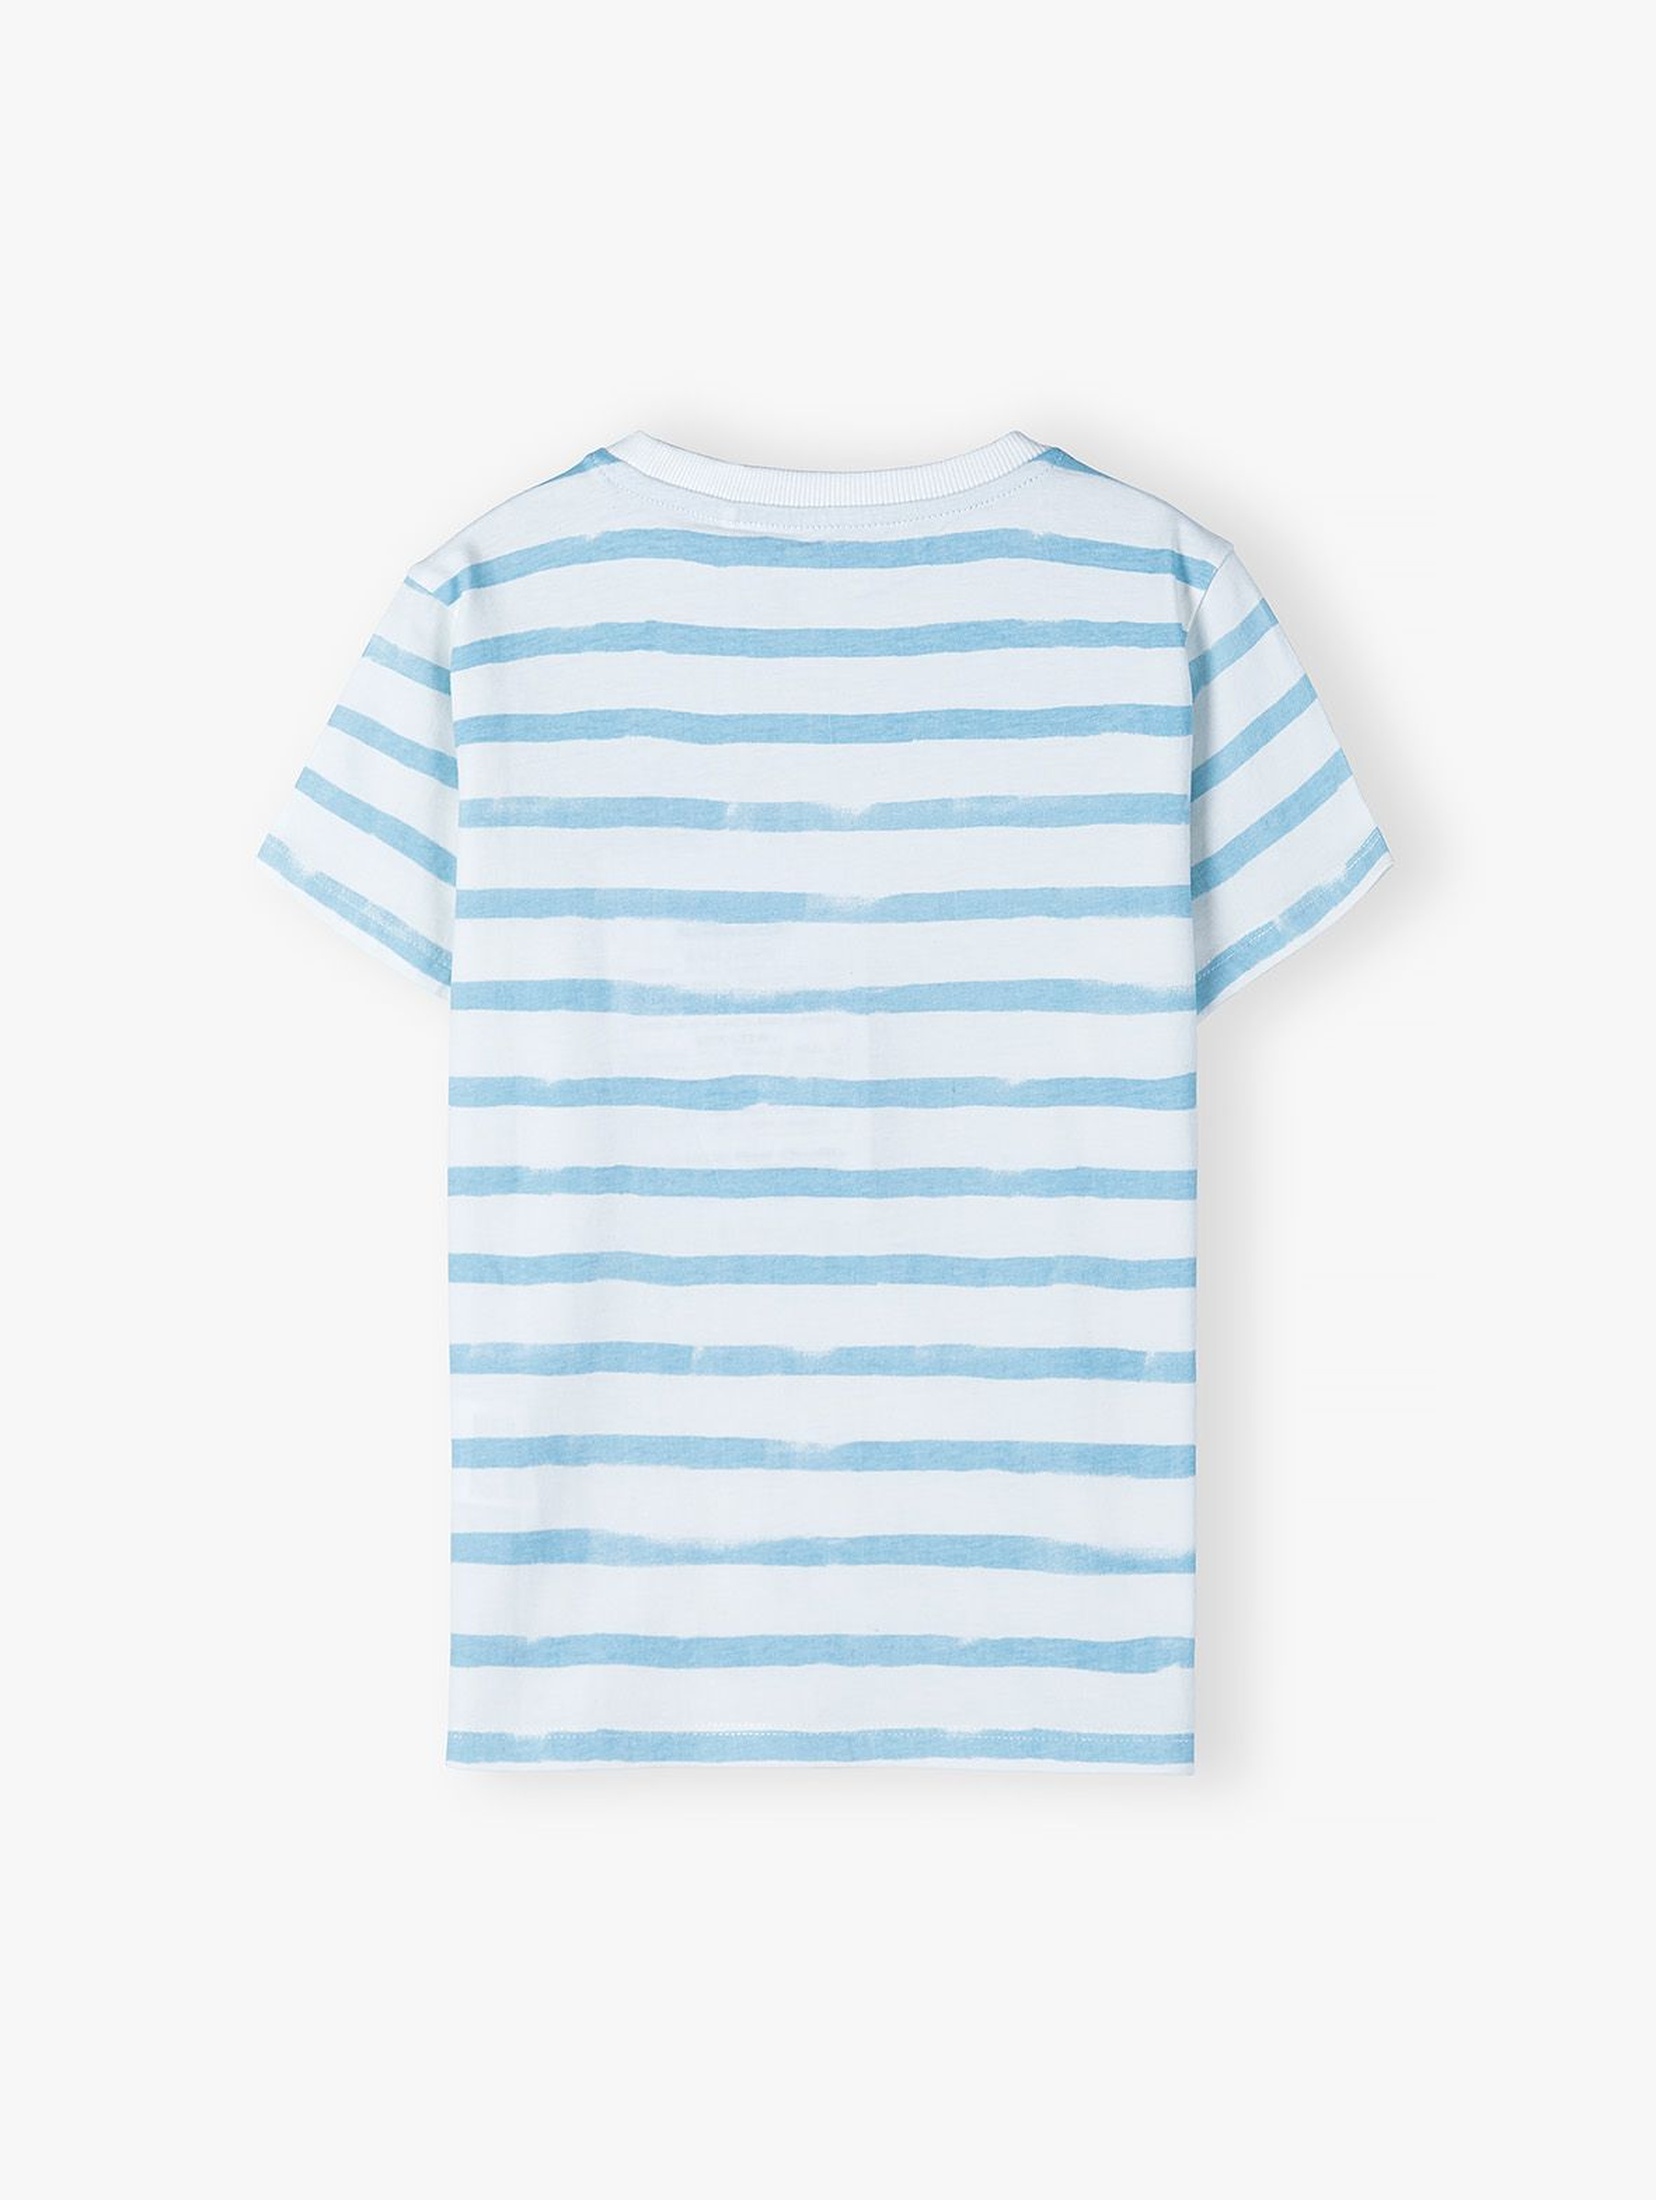 Dzianinowy T-shirt w błękito - białe pasy